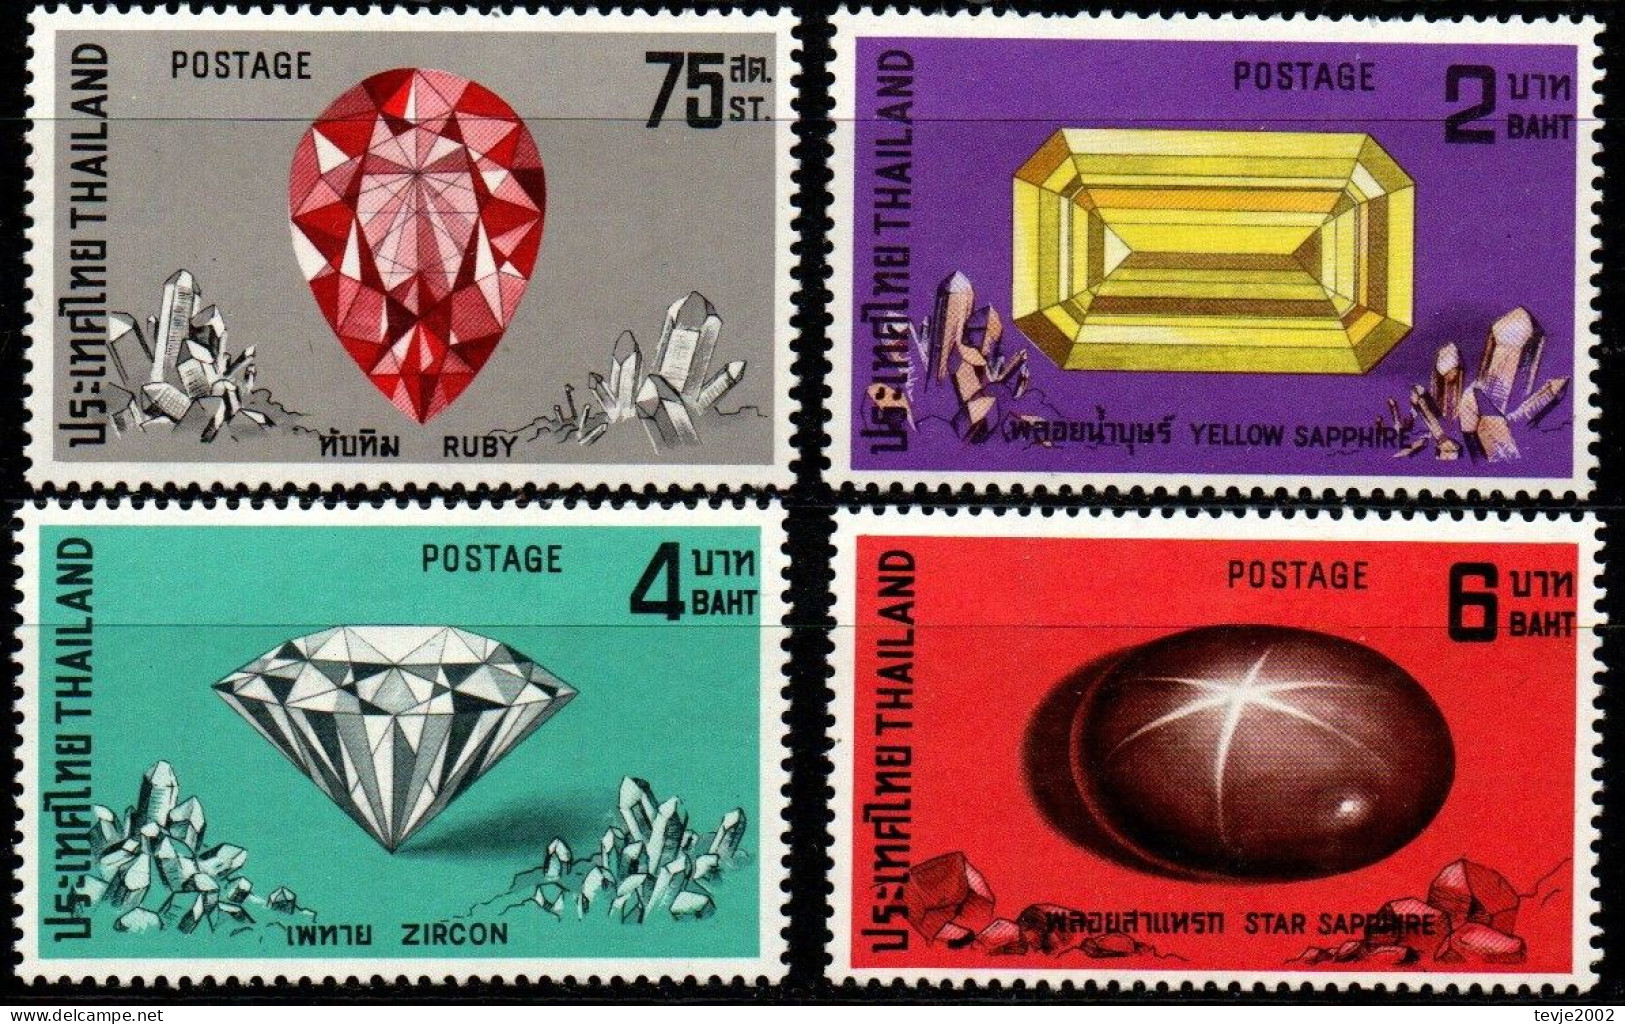 Thailand 1972 - Mi.Nr. 634 - 637 - Postfrisch MNH - Mineralien Minerals Edelsteine (siehe Beschreibung) - Mineralien